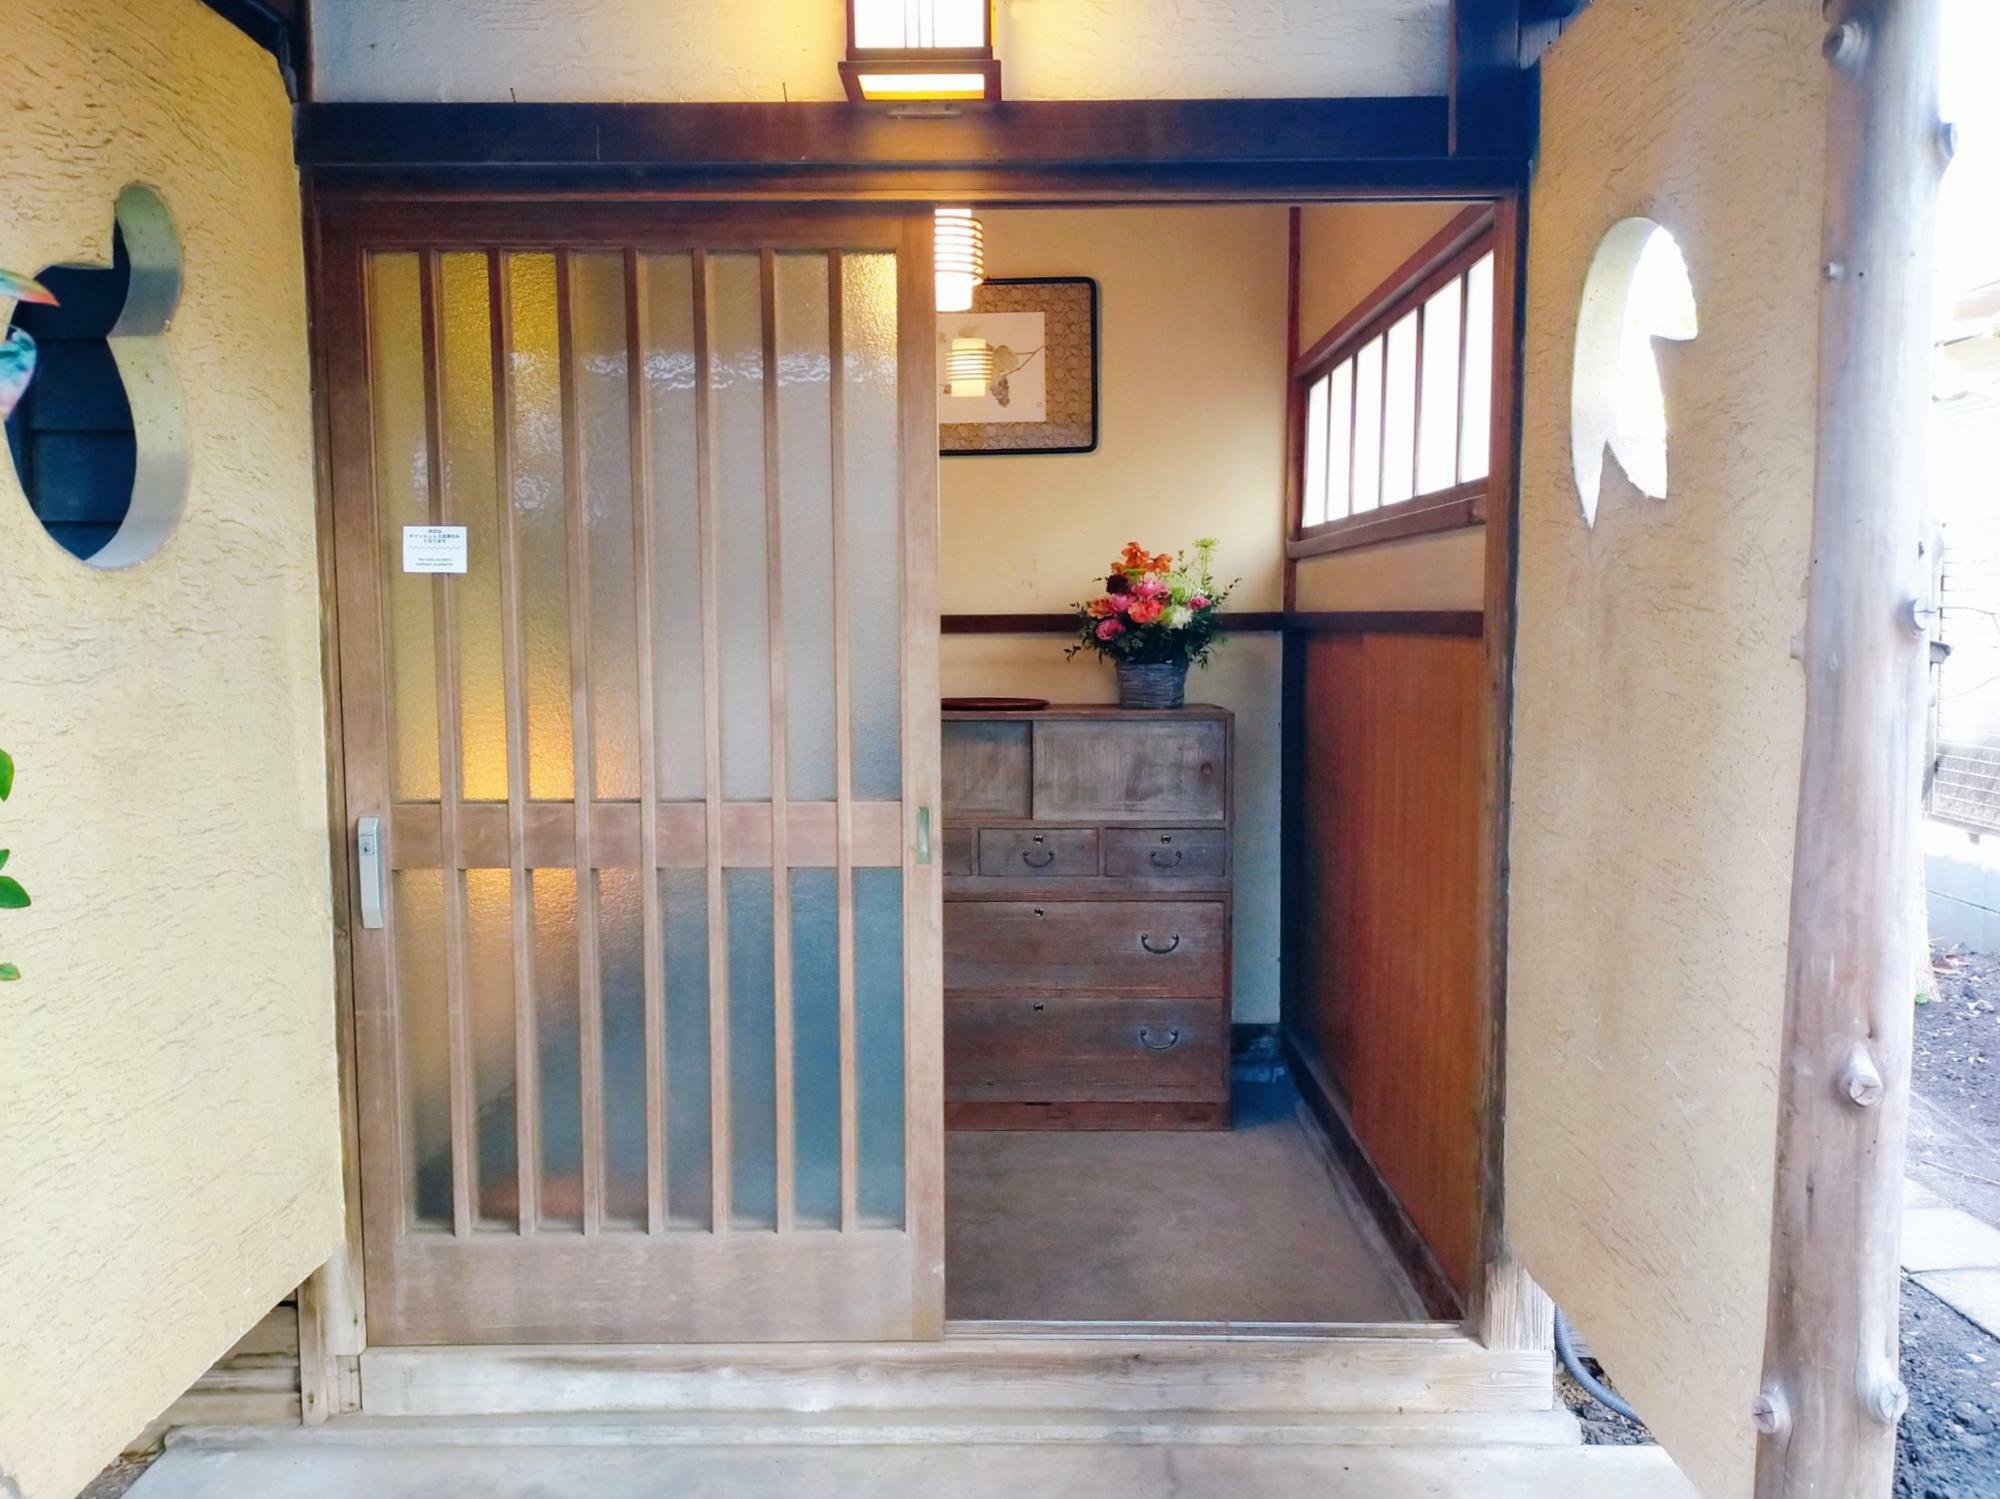 趣のある玄関。ここが鎌倉の中心地であることをつい忘れてしまいそうに。